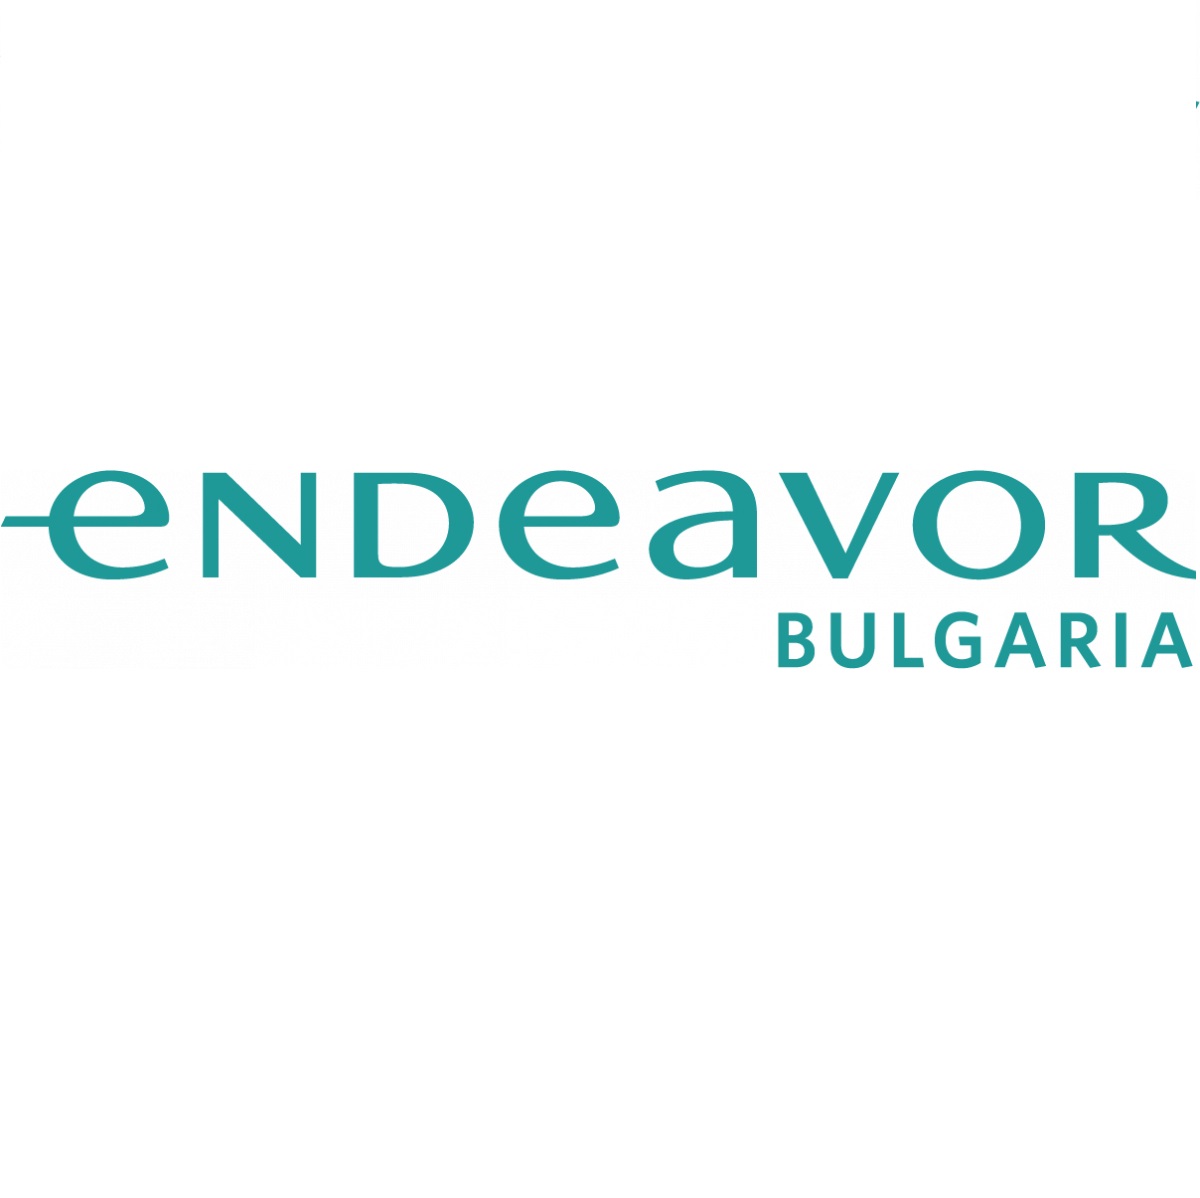 Endeavour Bulgaria